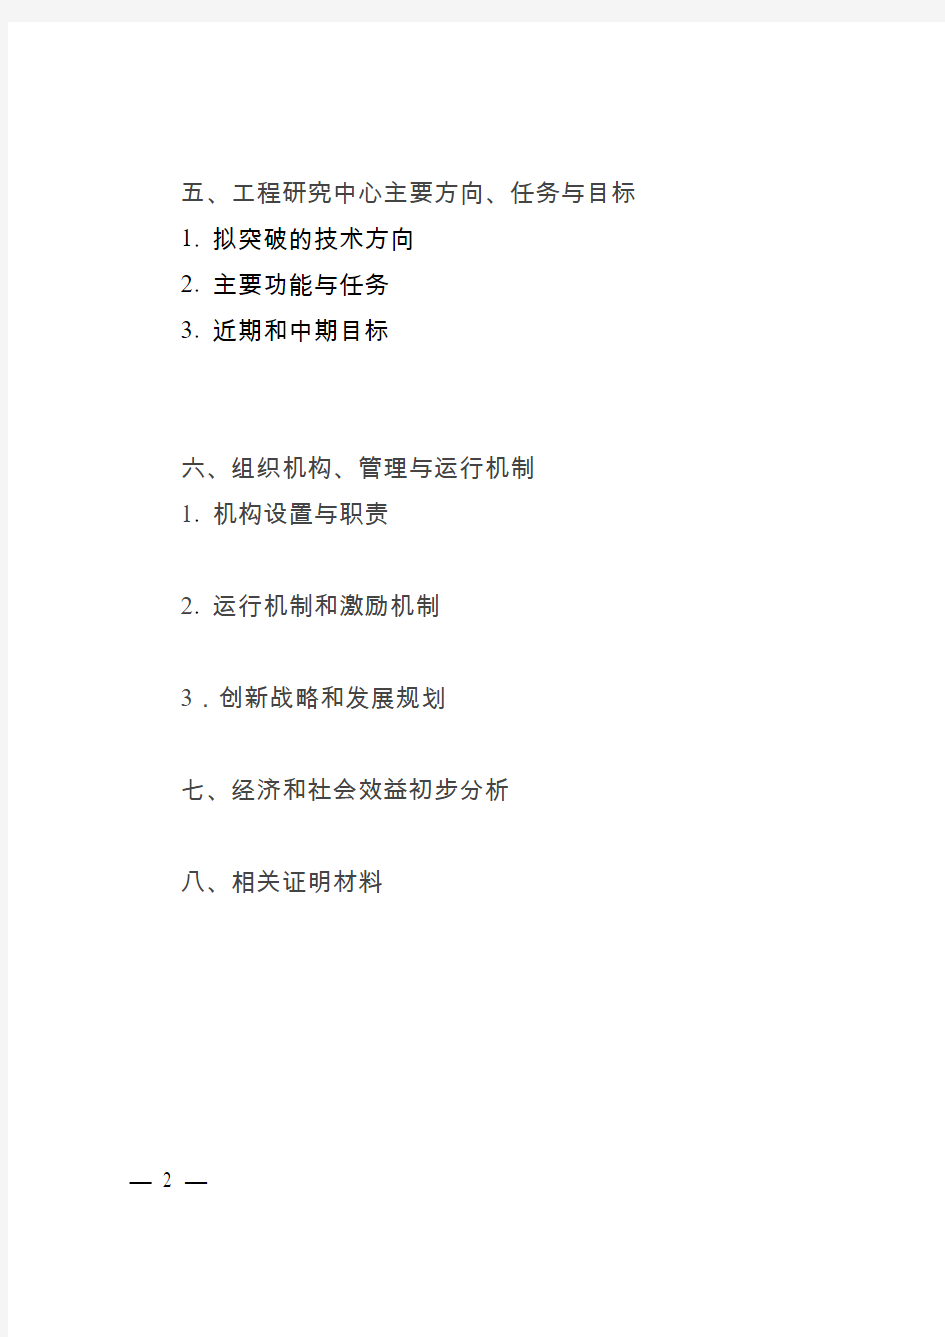 《重庆市工程研究中心组建方案》编写提纲